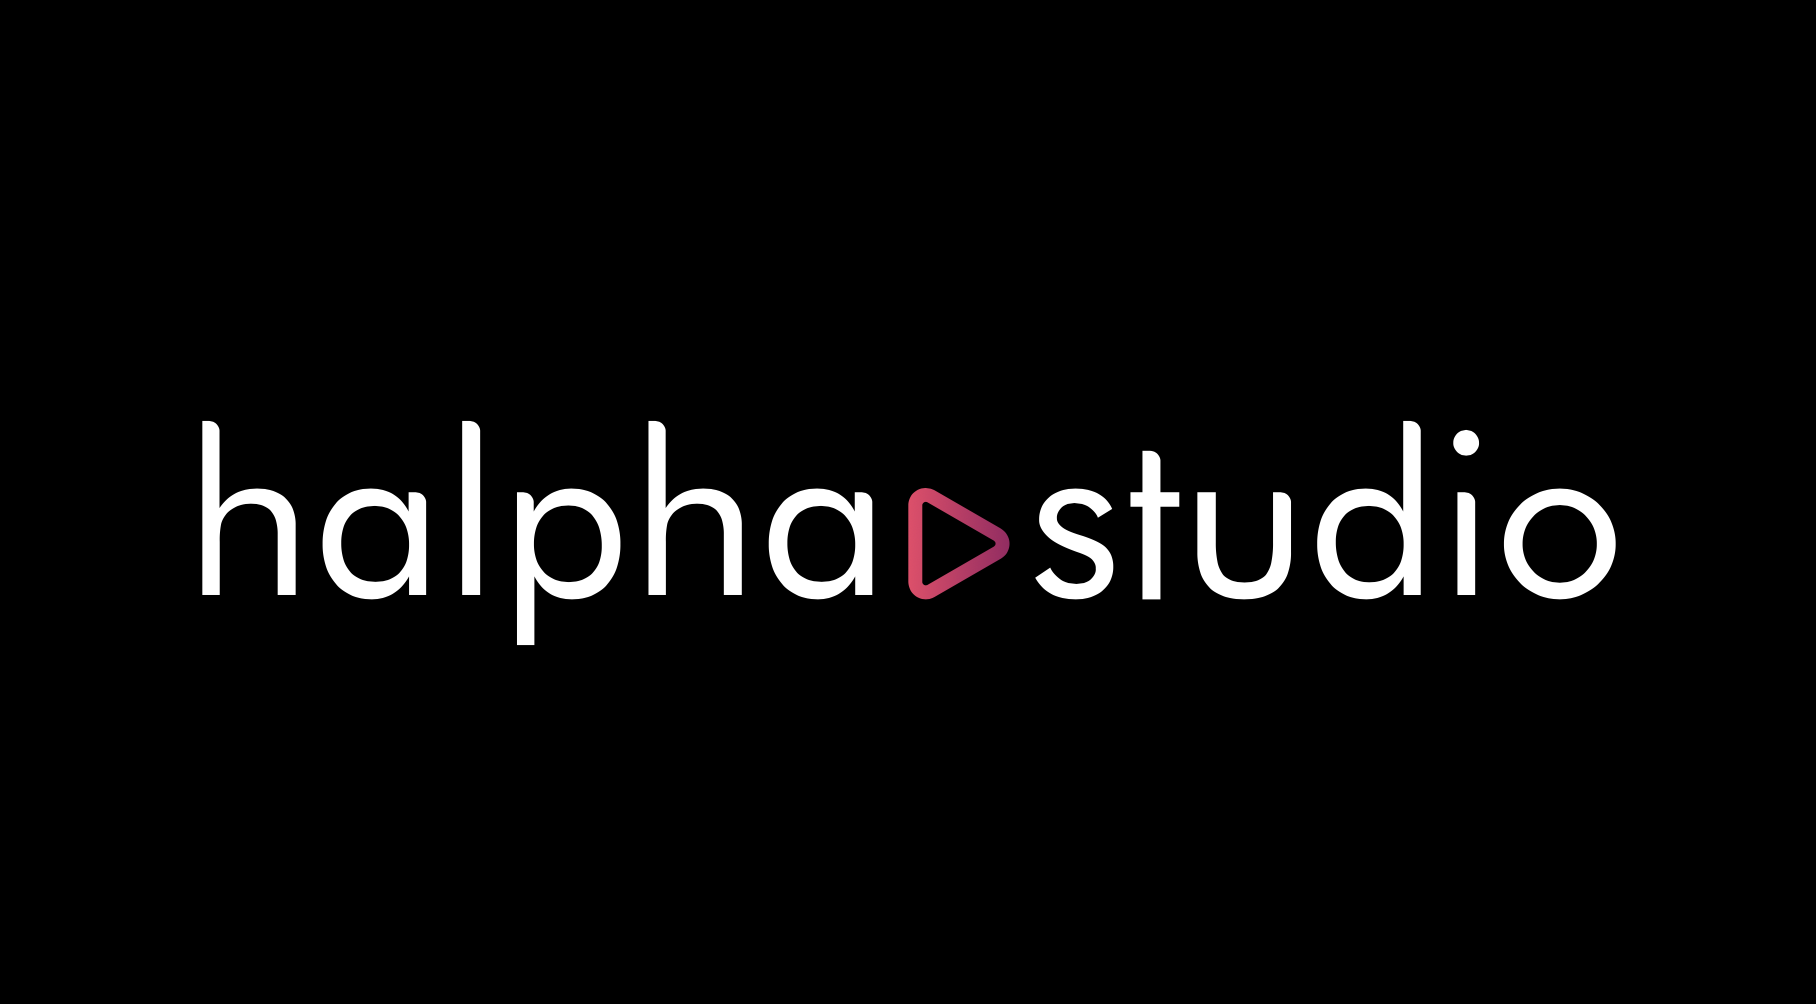 https://www.halpha.studio/wp-content/uploads/2022/12/Halphastudio-logo.png